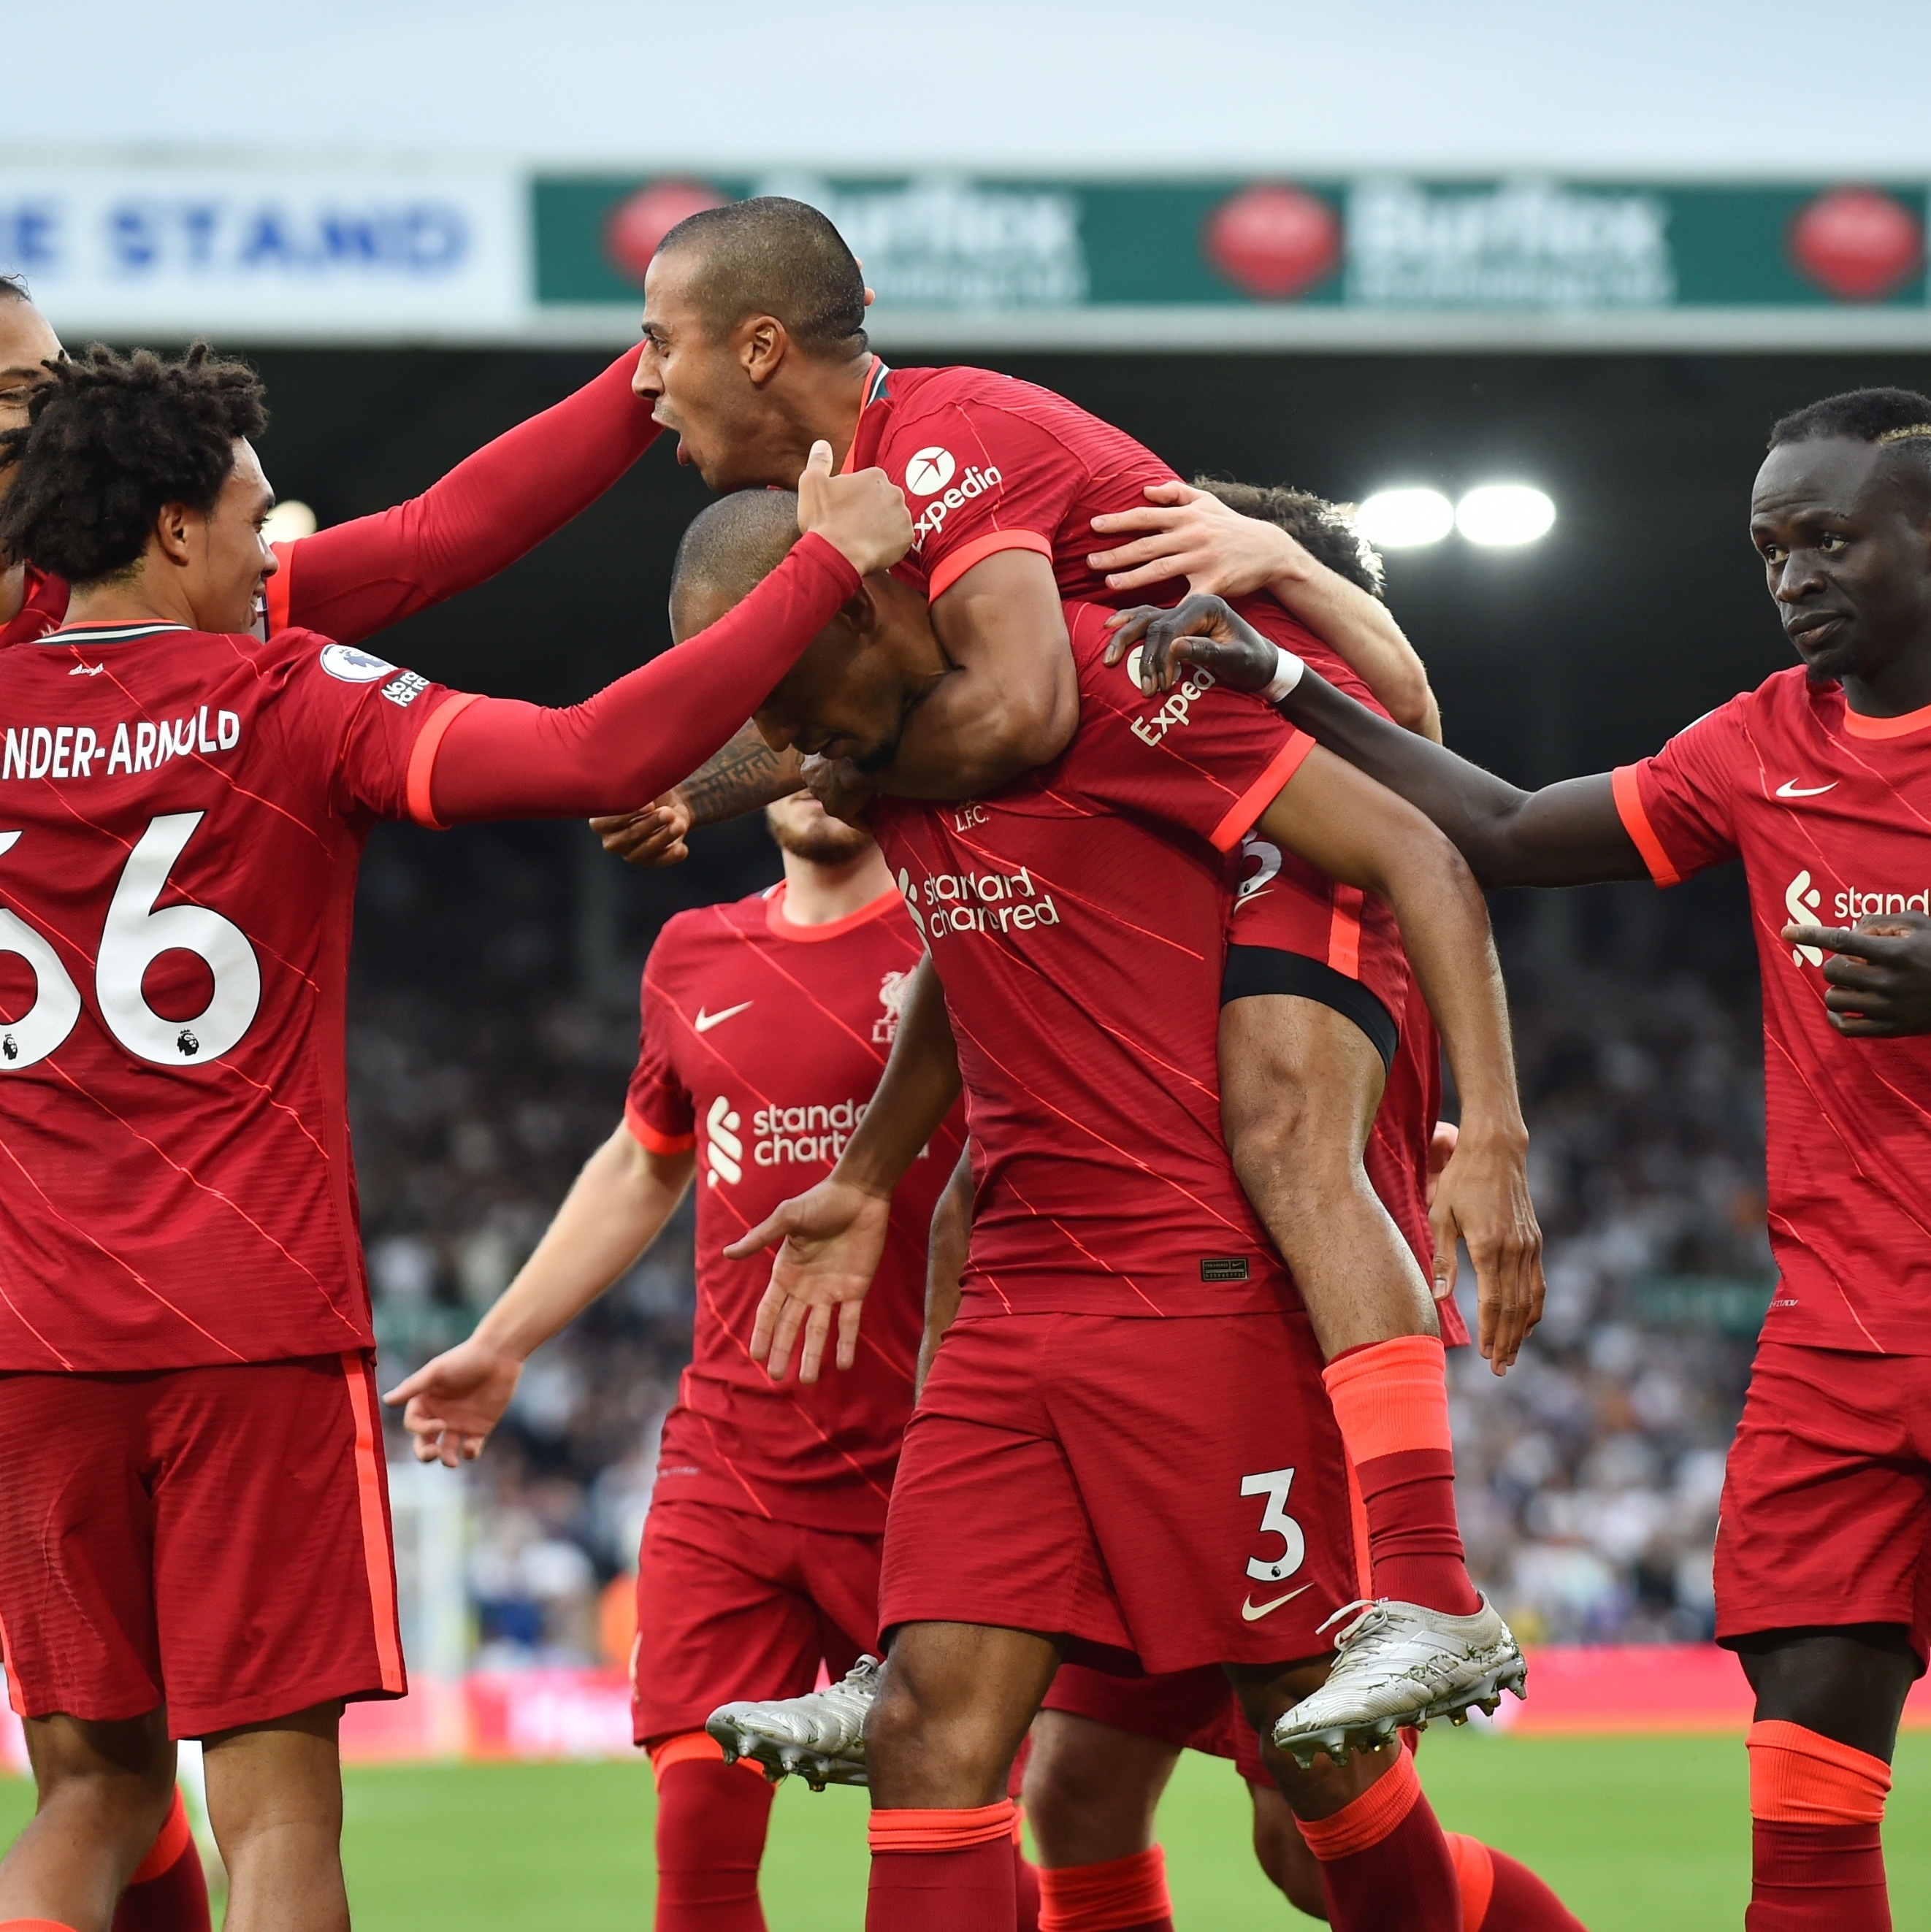 No maior clássico inglês, Liverpool arranca empate com o United - Lance!